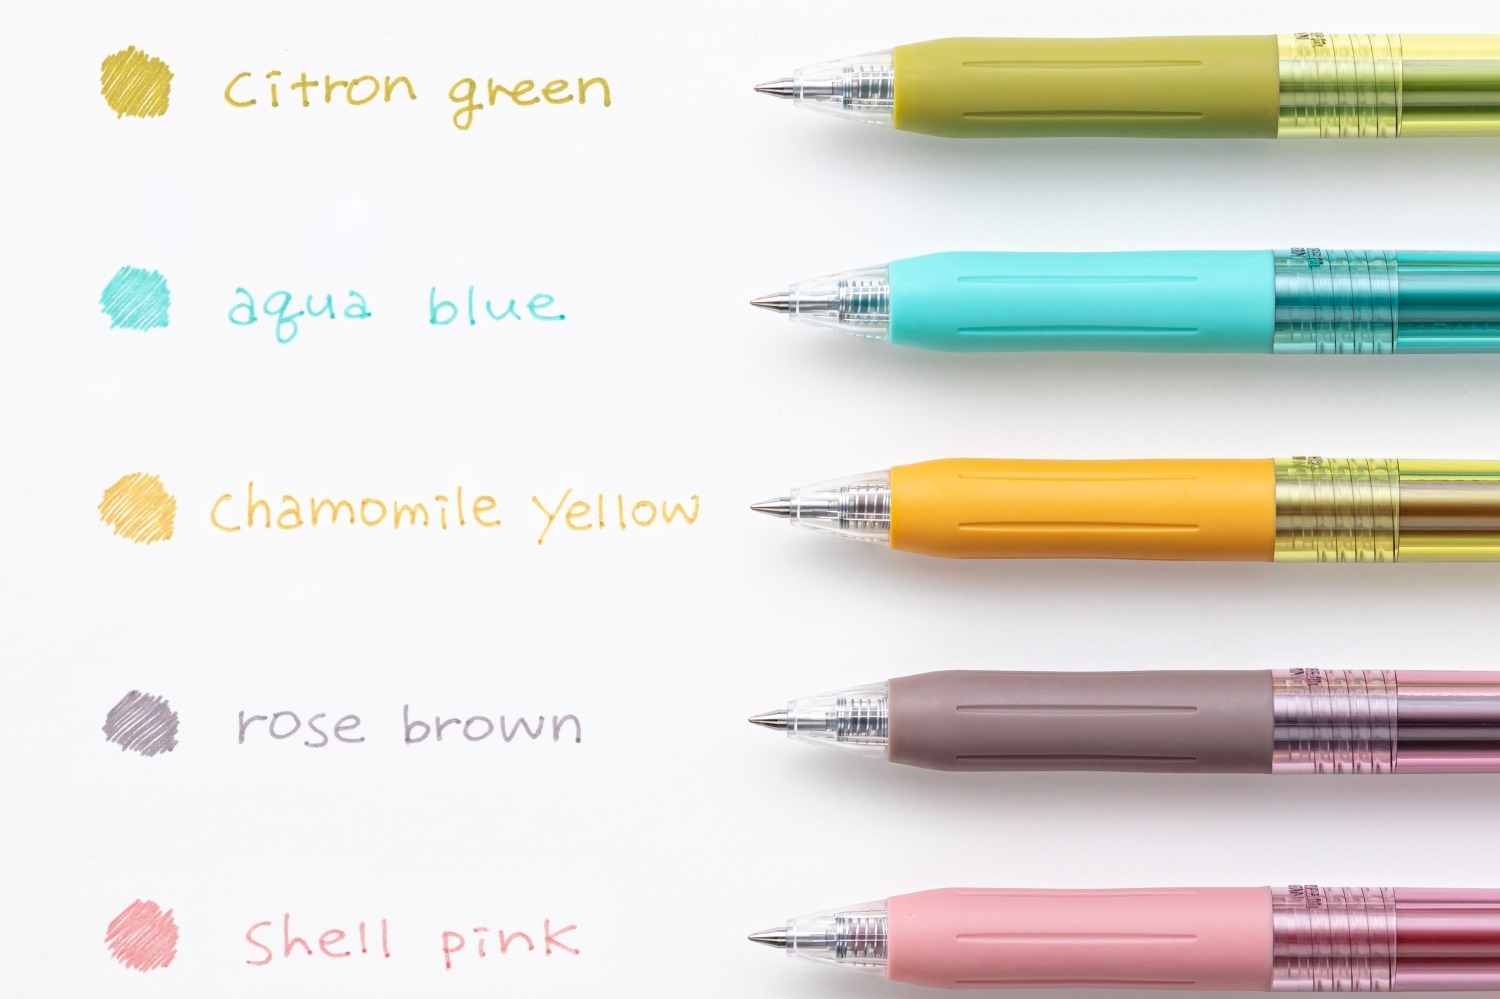 ゼブラ人気ボールペン「サラサクリップ」に限定色、“カモミールや 